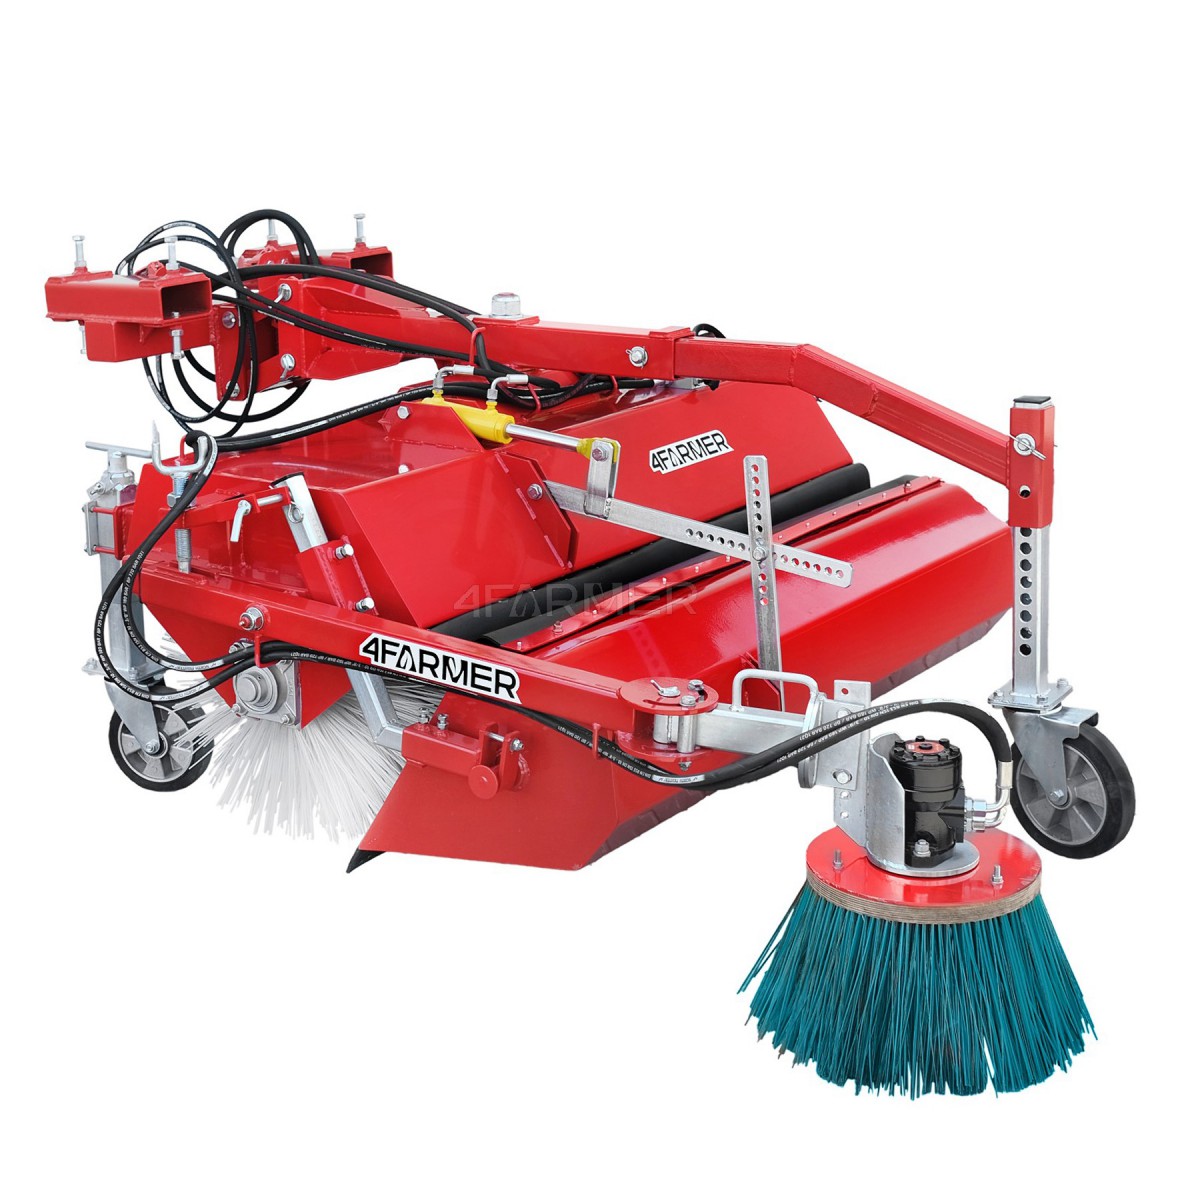 150 cm sweeper for forklift / backhoe loader, with basket and side brush 4FARMER